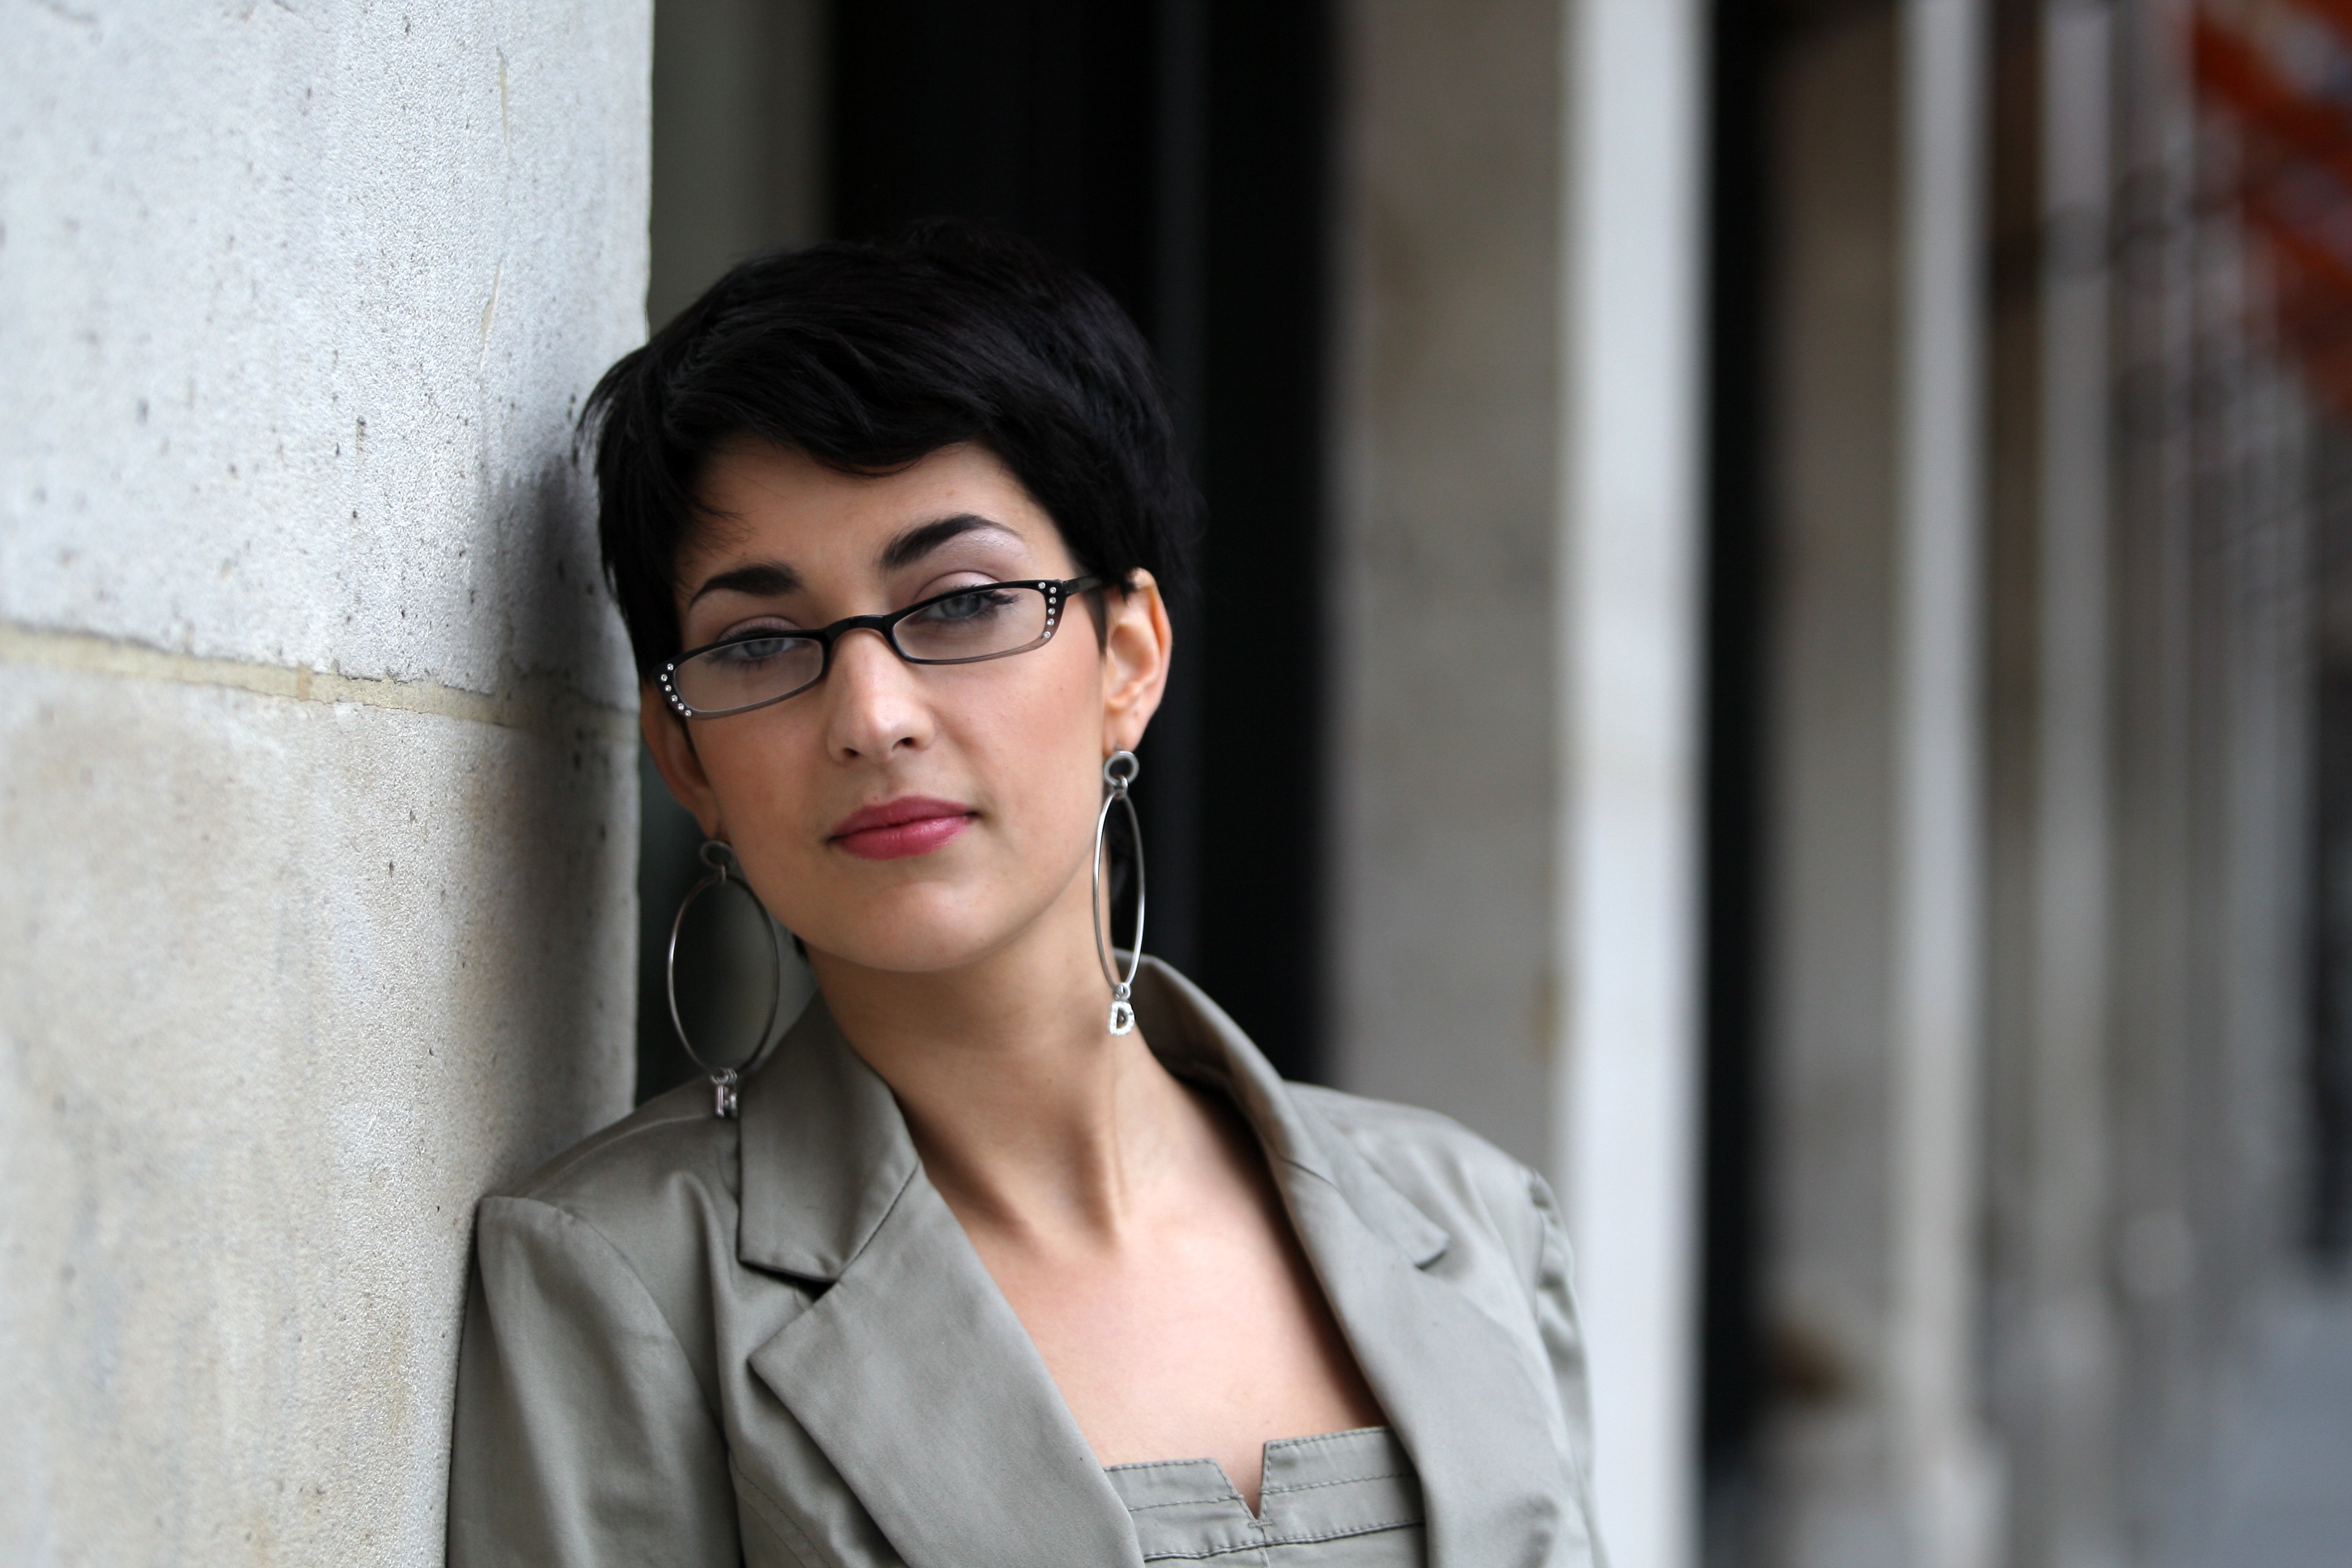 Sheryfa Luna, photographiée ici par Le Parisien en 2010, a annoncé son retour dans une vidéo postée sur les réseaux sociaux. LP/Olivier Lejeune